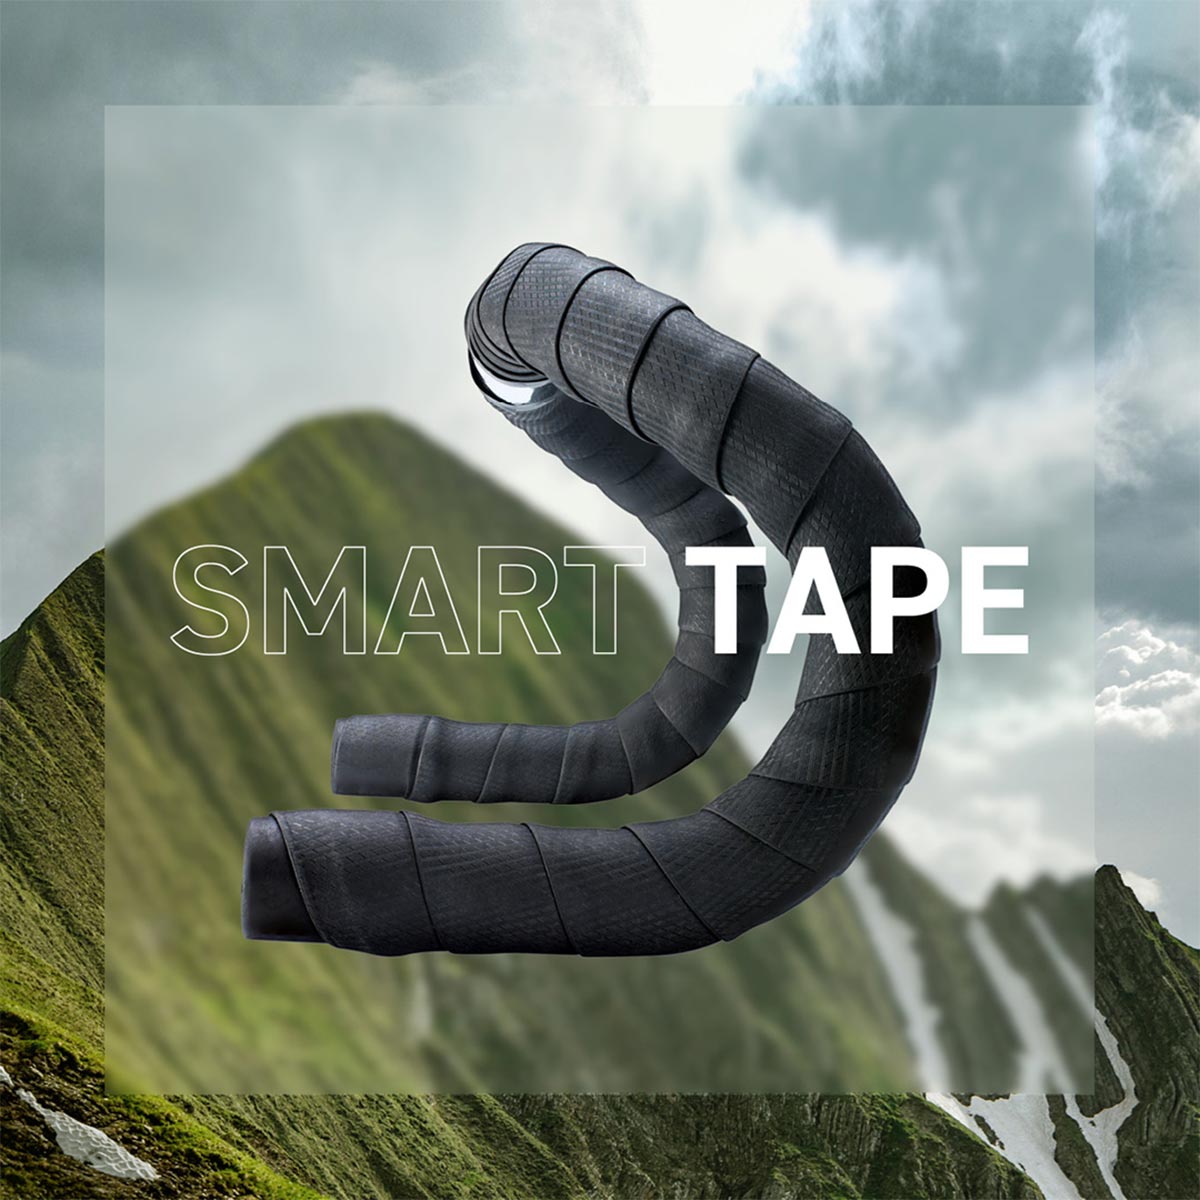 Selle Italia presenta la Smart Tape, su primera cinta de manillar de fabricación sostenible con tecnología Greentech